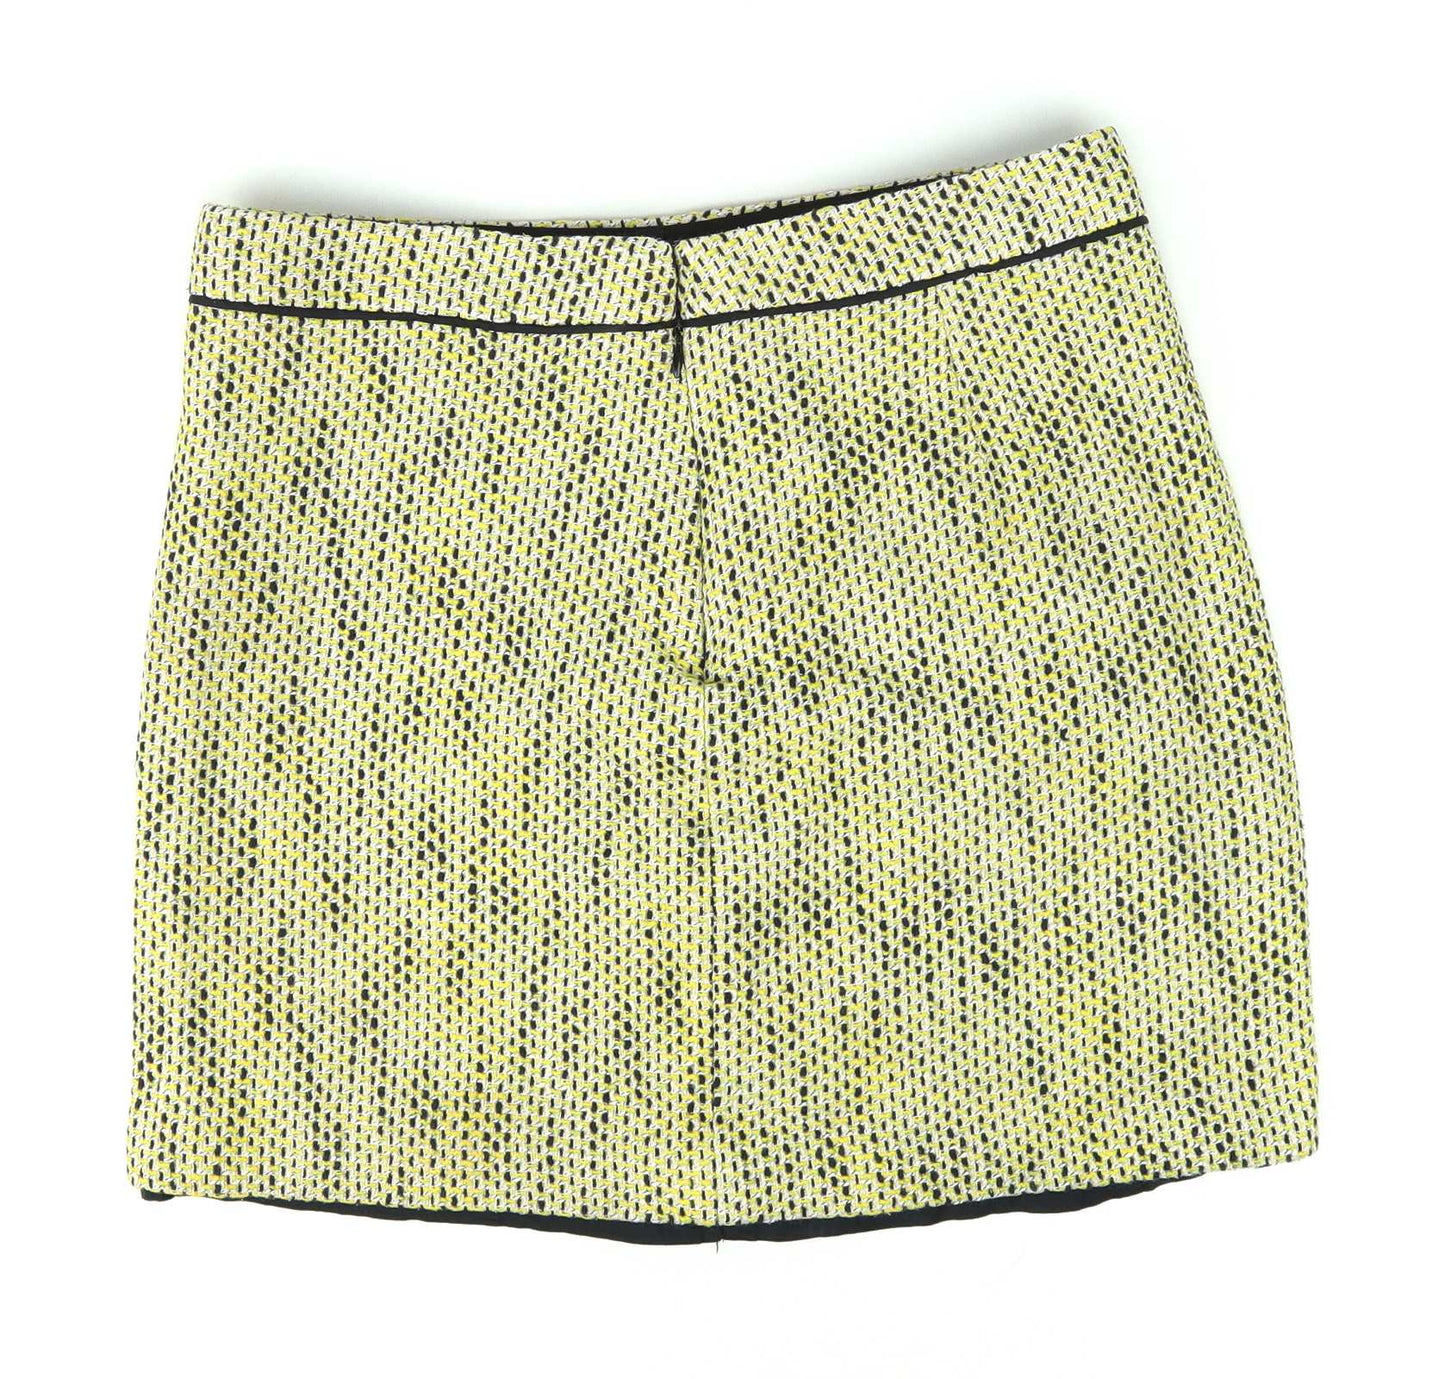 Banana Republic Womens Size 6 Yellow Textured Cotton Blend Skirt (Regular)